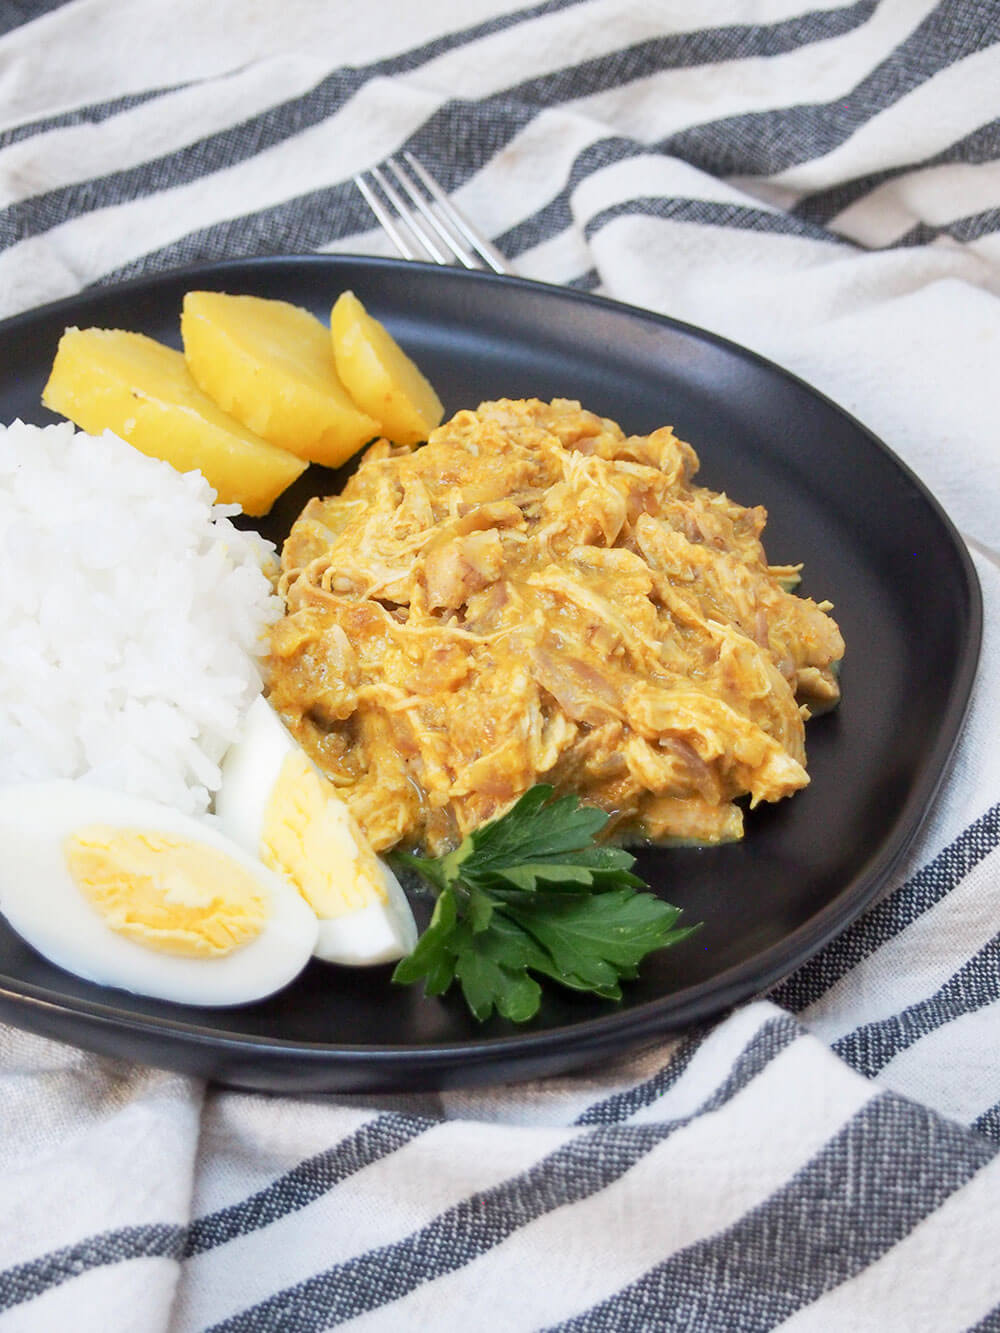 Aji de gallina (perui csirke) rizzsel, tojással és burgonyával az oldalán, mindez fekete tányéron